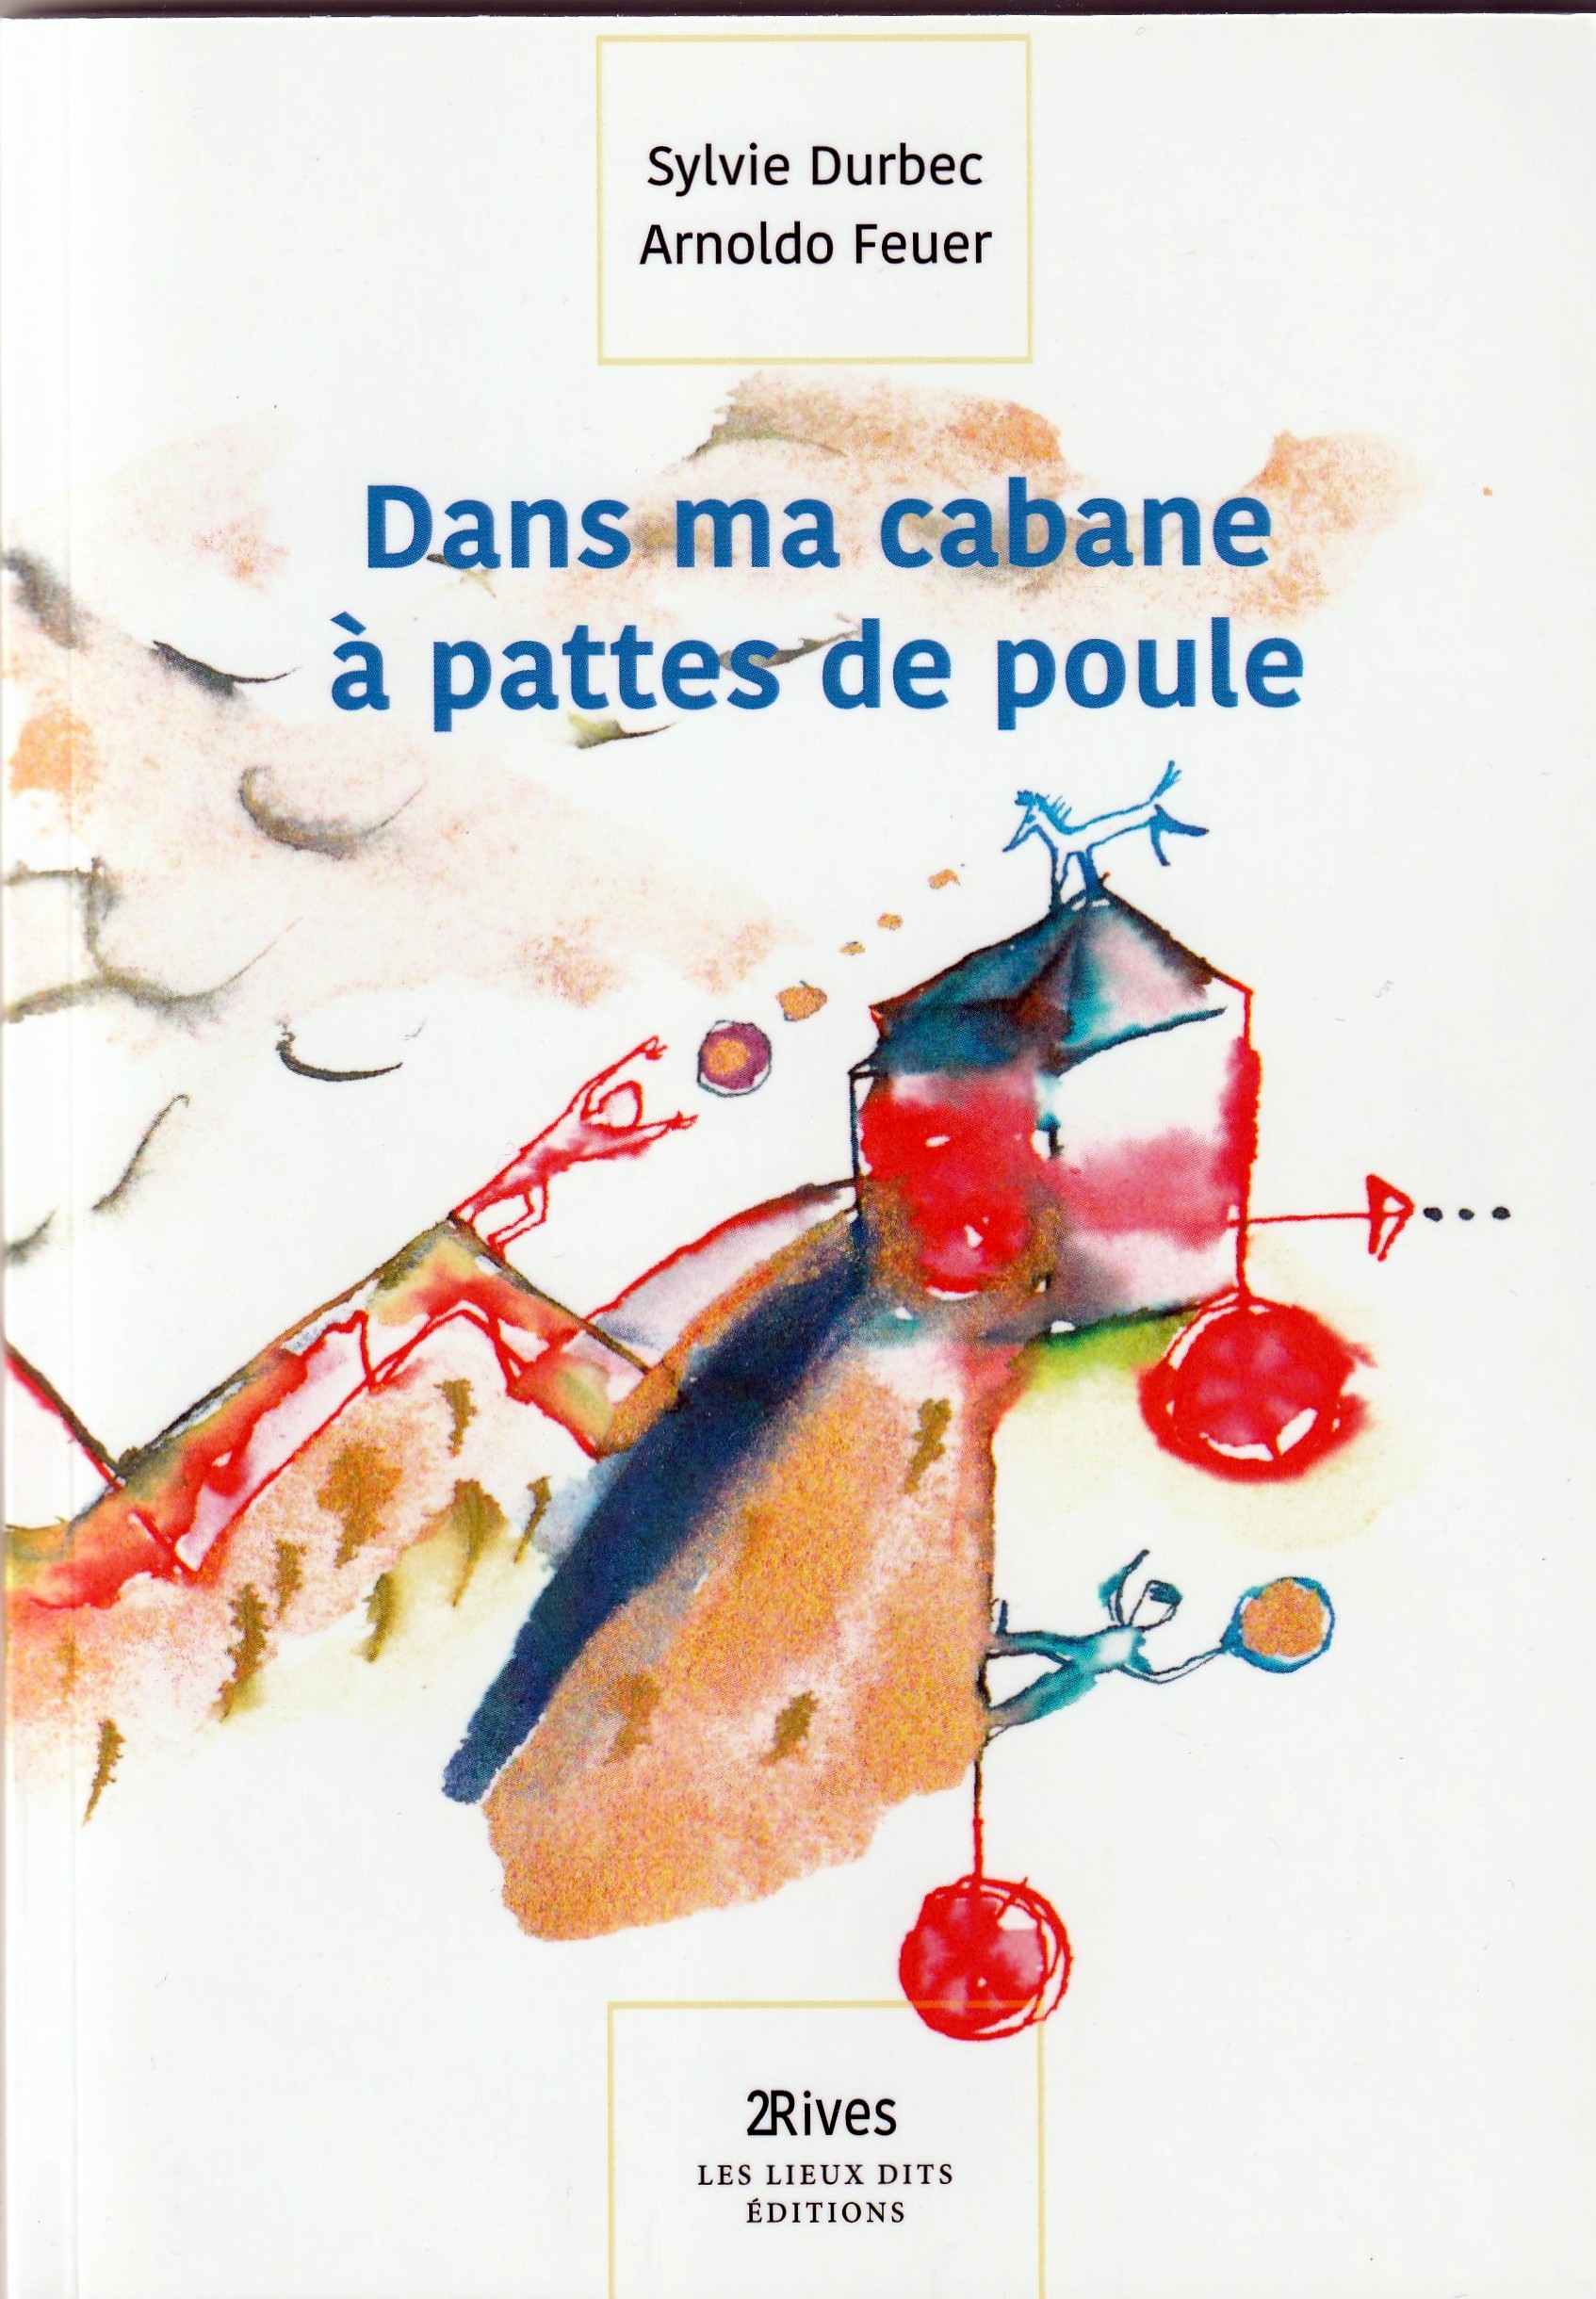 La vie des vers de farine (par Chloé B) - Le blog de